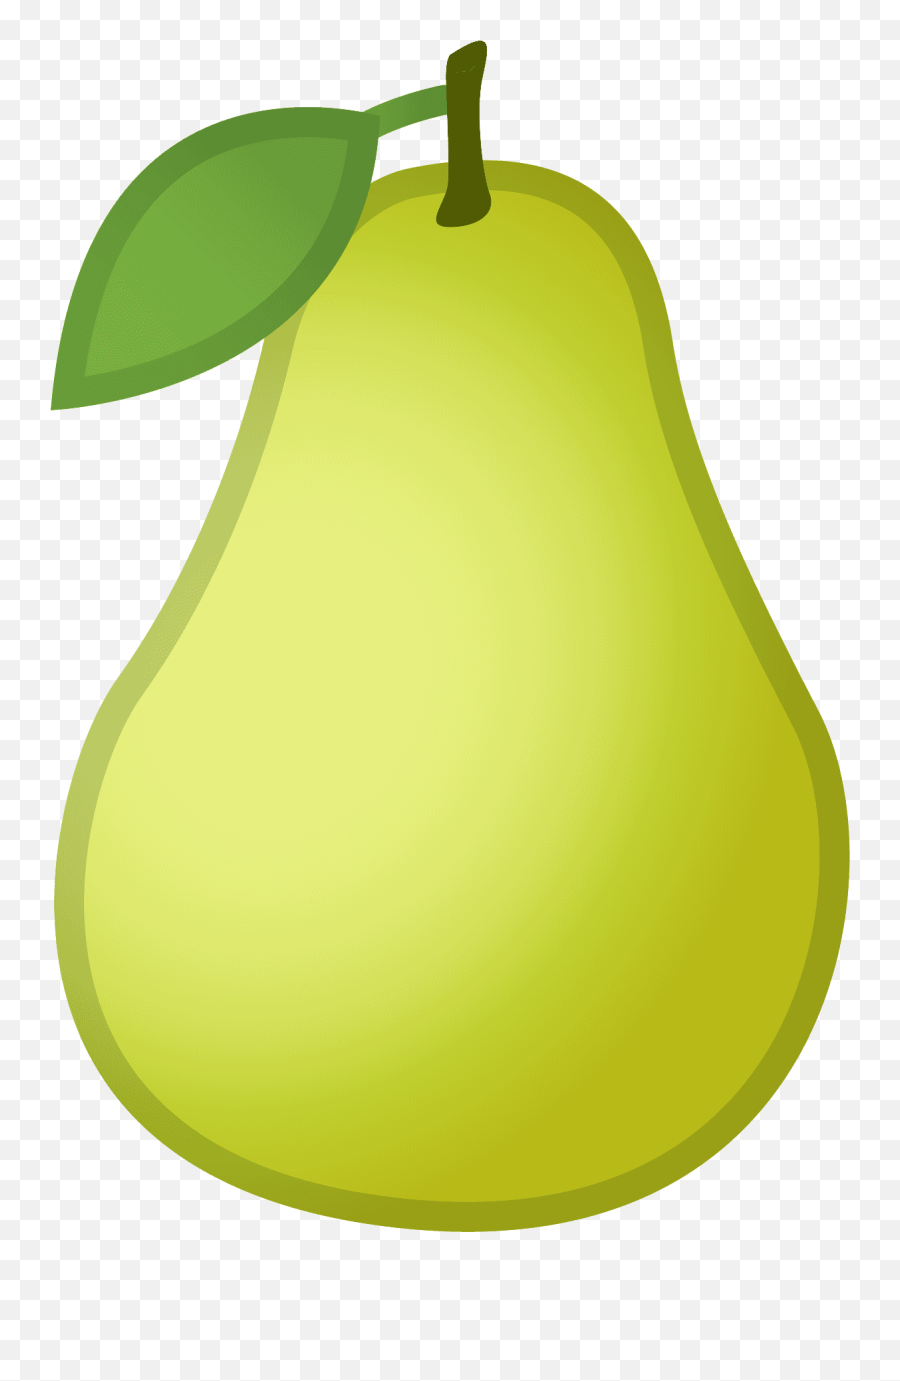 Pear Emoji - Pear Icon,Fruit Emoji